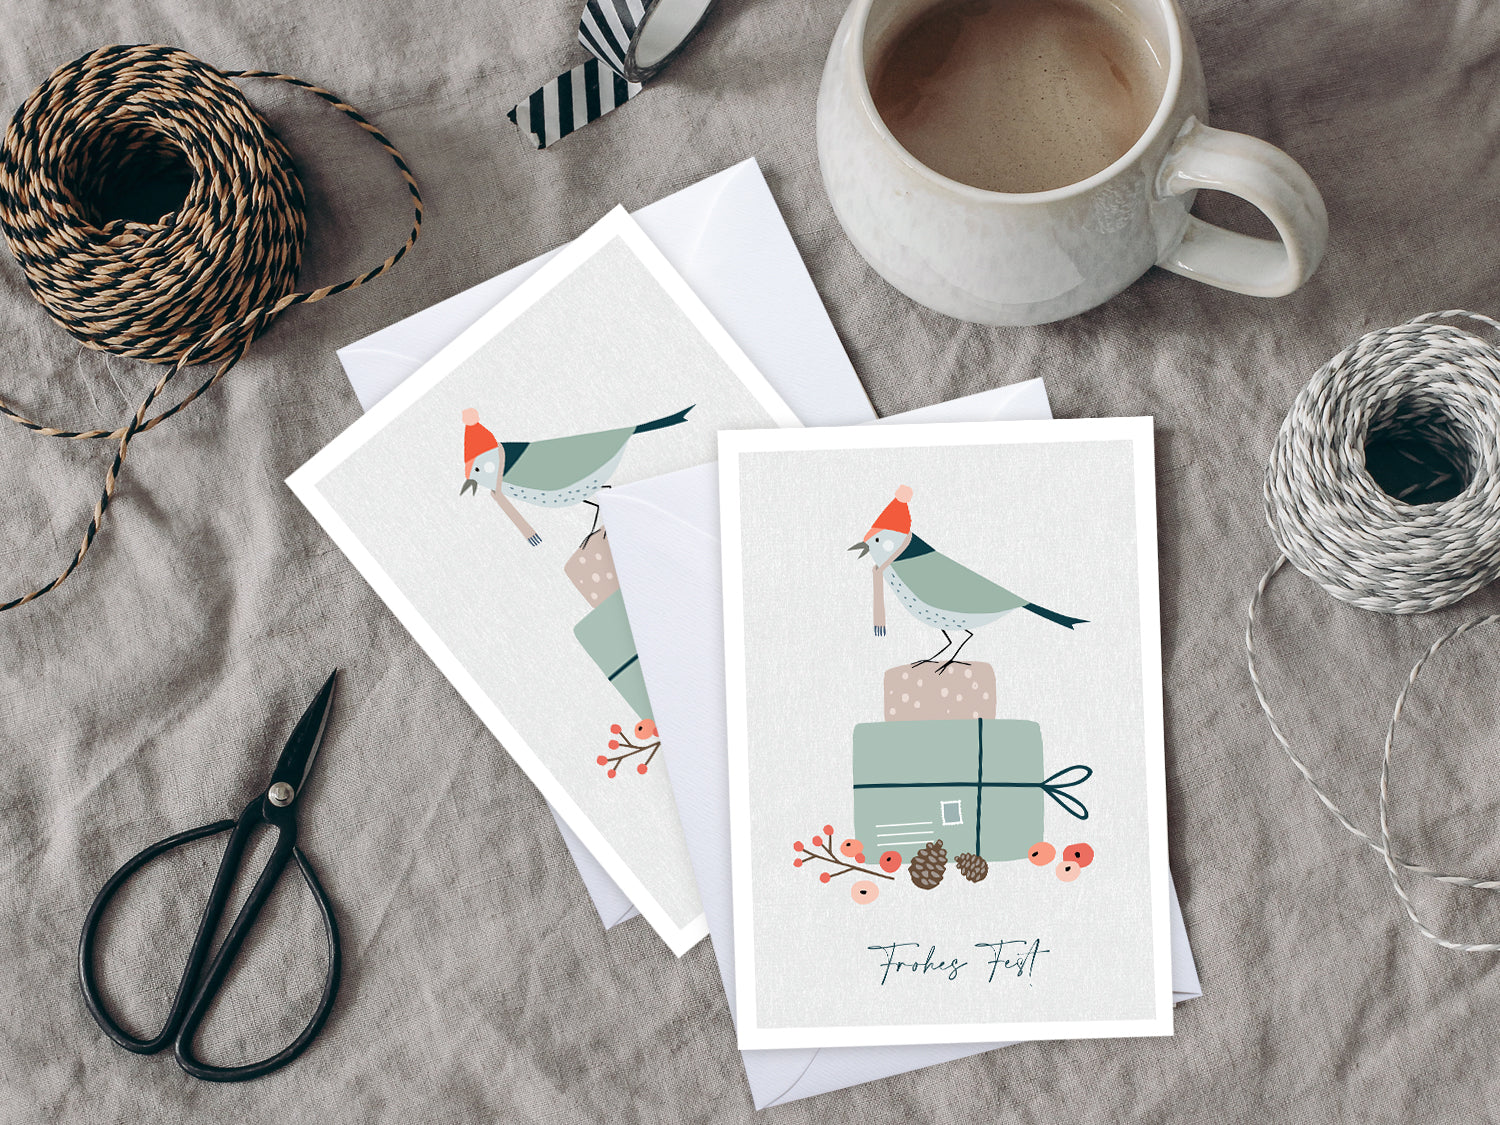 Weihnachtskarte im Scandi Nordic Stil als kleiner Postkartengruß, illustriert mit einem Vogel auf einem Geschenk und dem Wunsch nach einem "Frohen Fest".  Die gedeckten Pastellfarben und der minimalistischem Nordic Design Stil zaubert dieser Weihnachtsgruß eine gemütliche Atmosphäre unter deinen Tannenbaum.